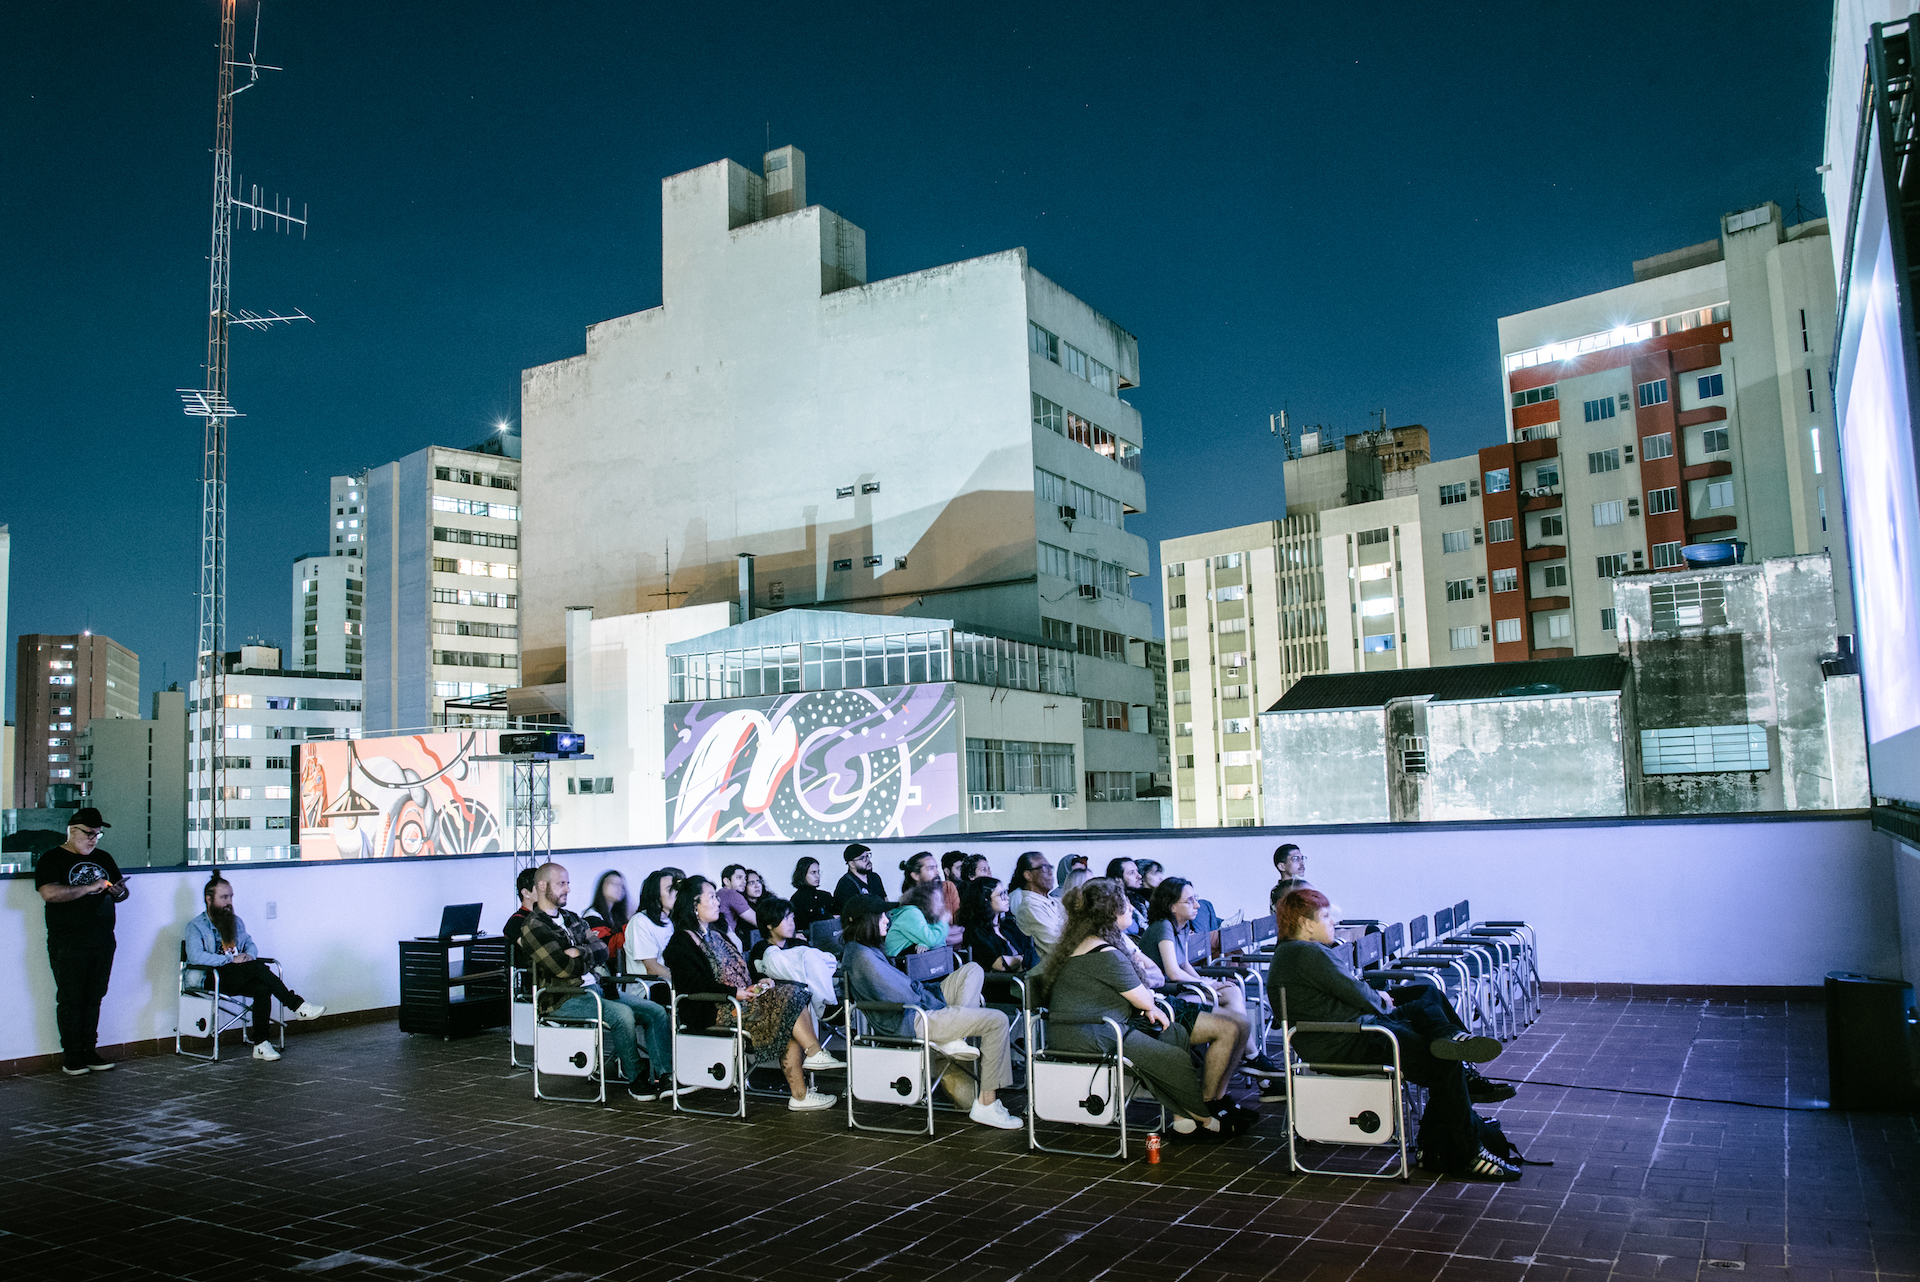 Mostra DJANHO exibirá mais de 30 filmes de terror nos cinemas da Prefeitura  - Prefeitura de Curitiba